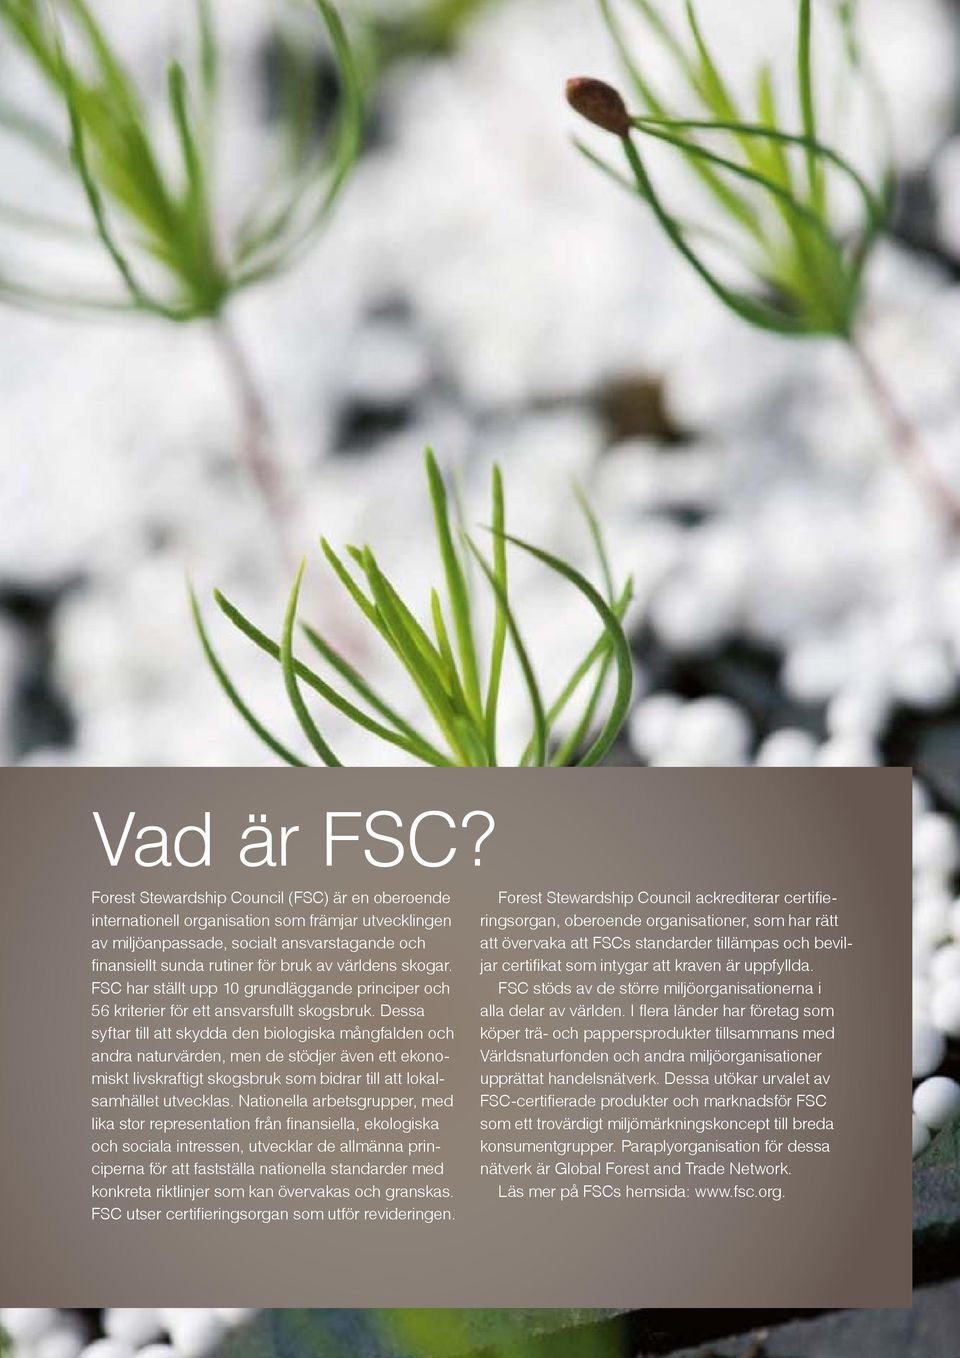 skogar. FSC har ställt upp 10 grundläggande principer och 56 kriterier för ett ansvarsfullt skogsbruk.